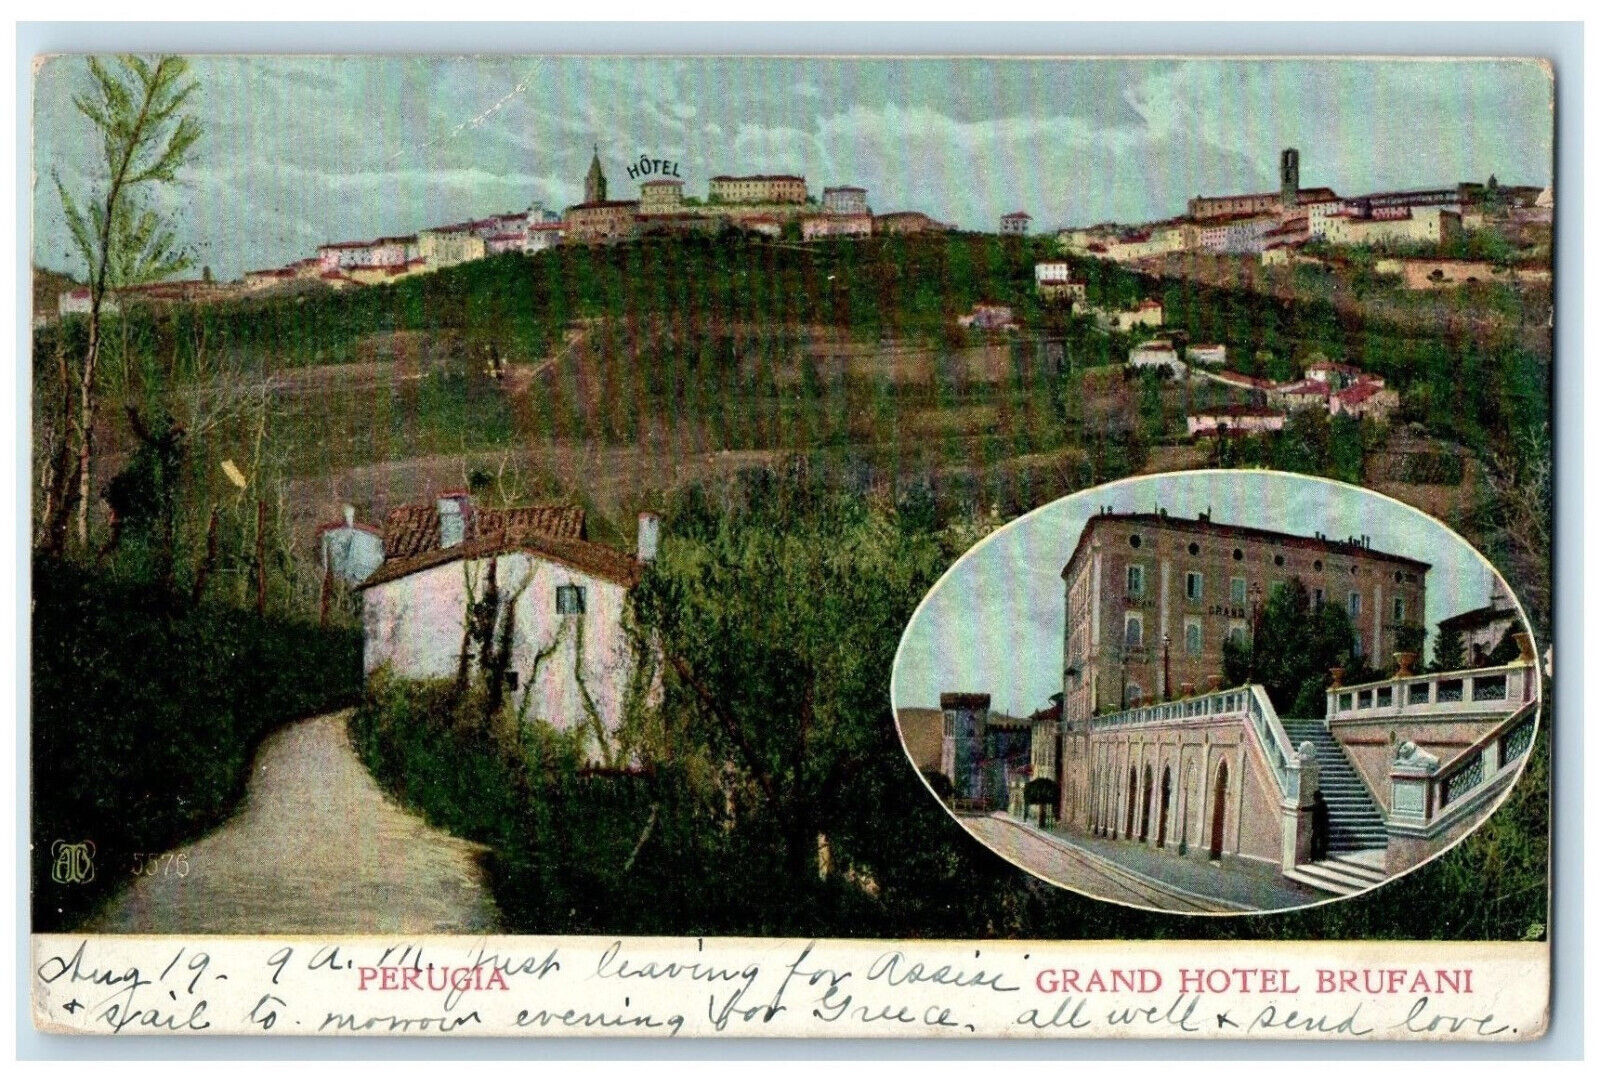 c1905 Grand Hotel Brufani Perugia Umbria Region Italy Posted Antique Postcard